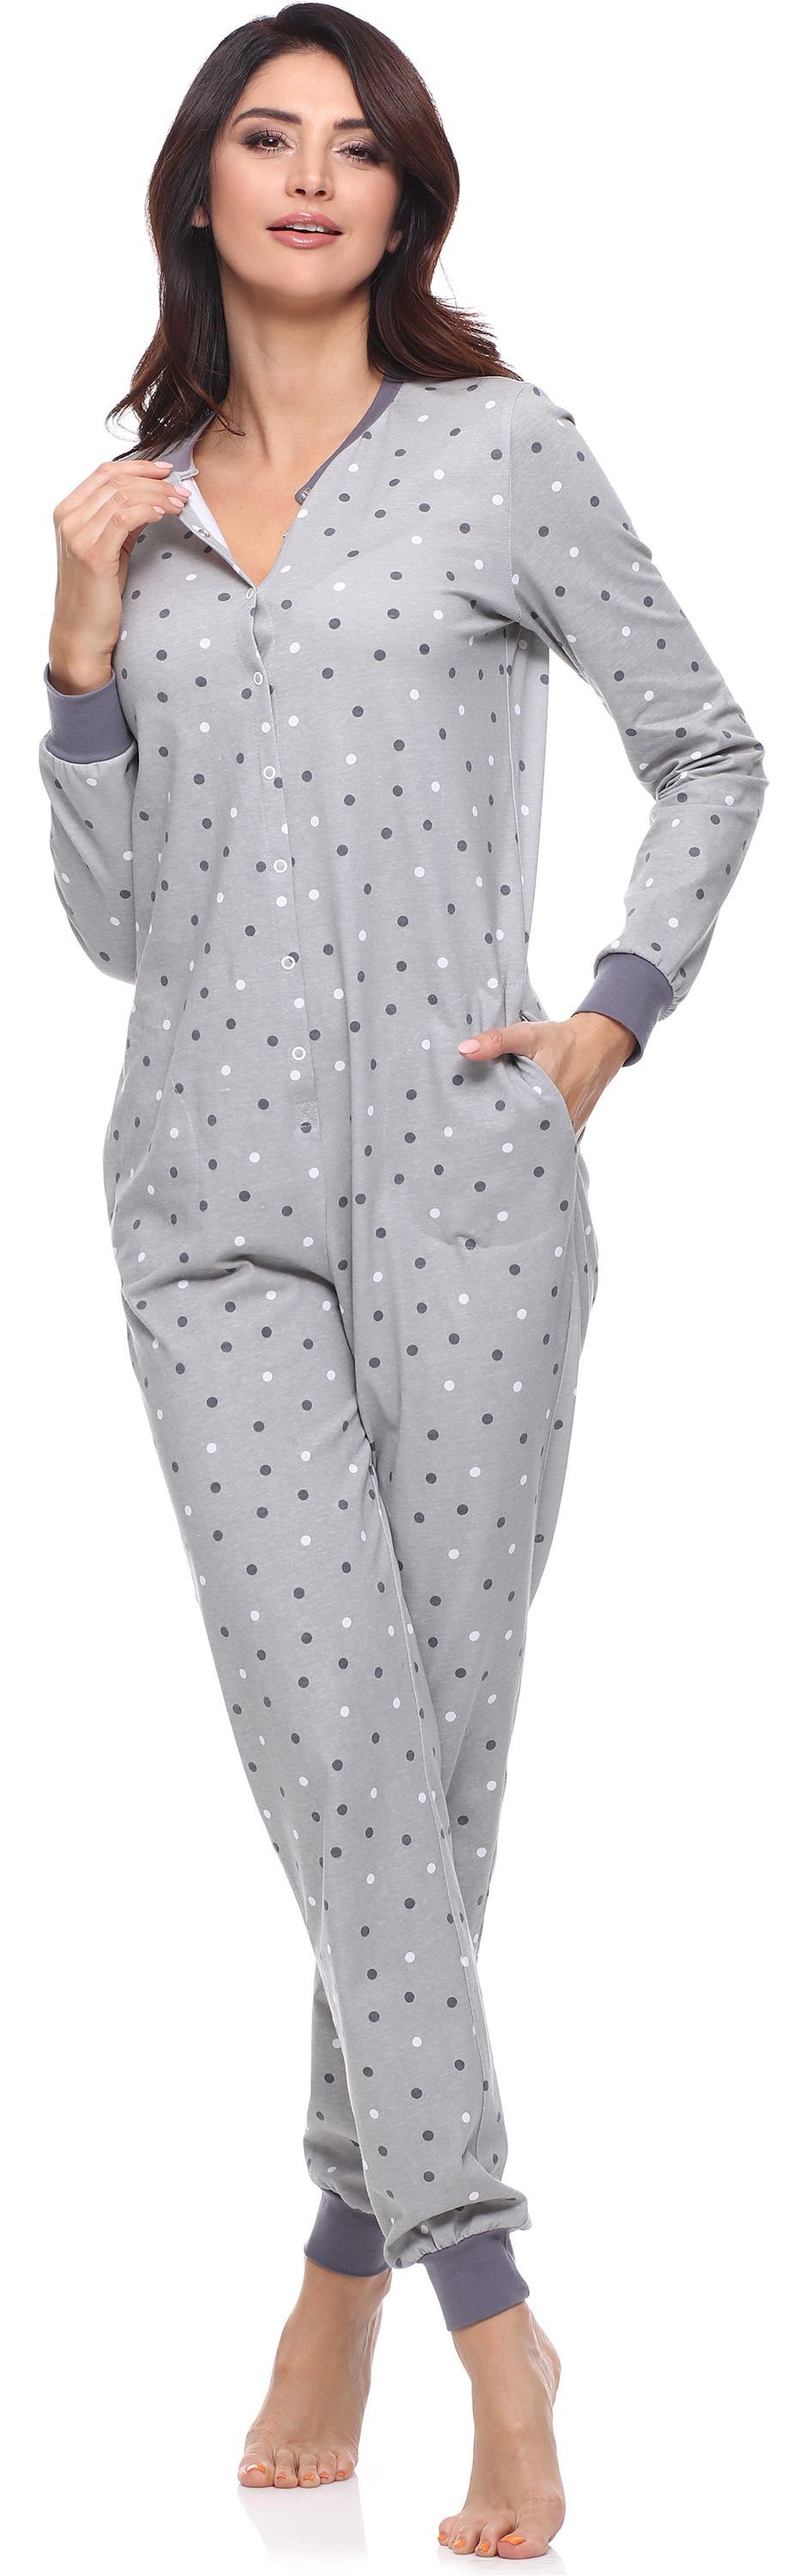 Damen Grau/Punkten Strampelanzug Schlafanzug Schlafanzug Style MS10-187 Schlafoverall Merry